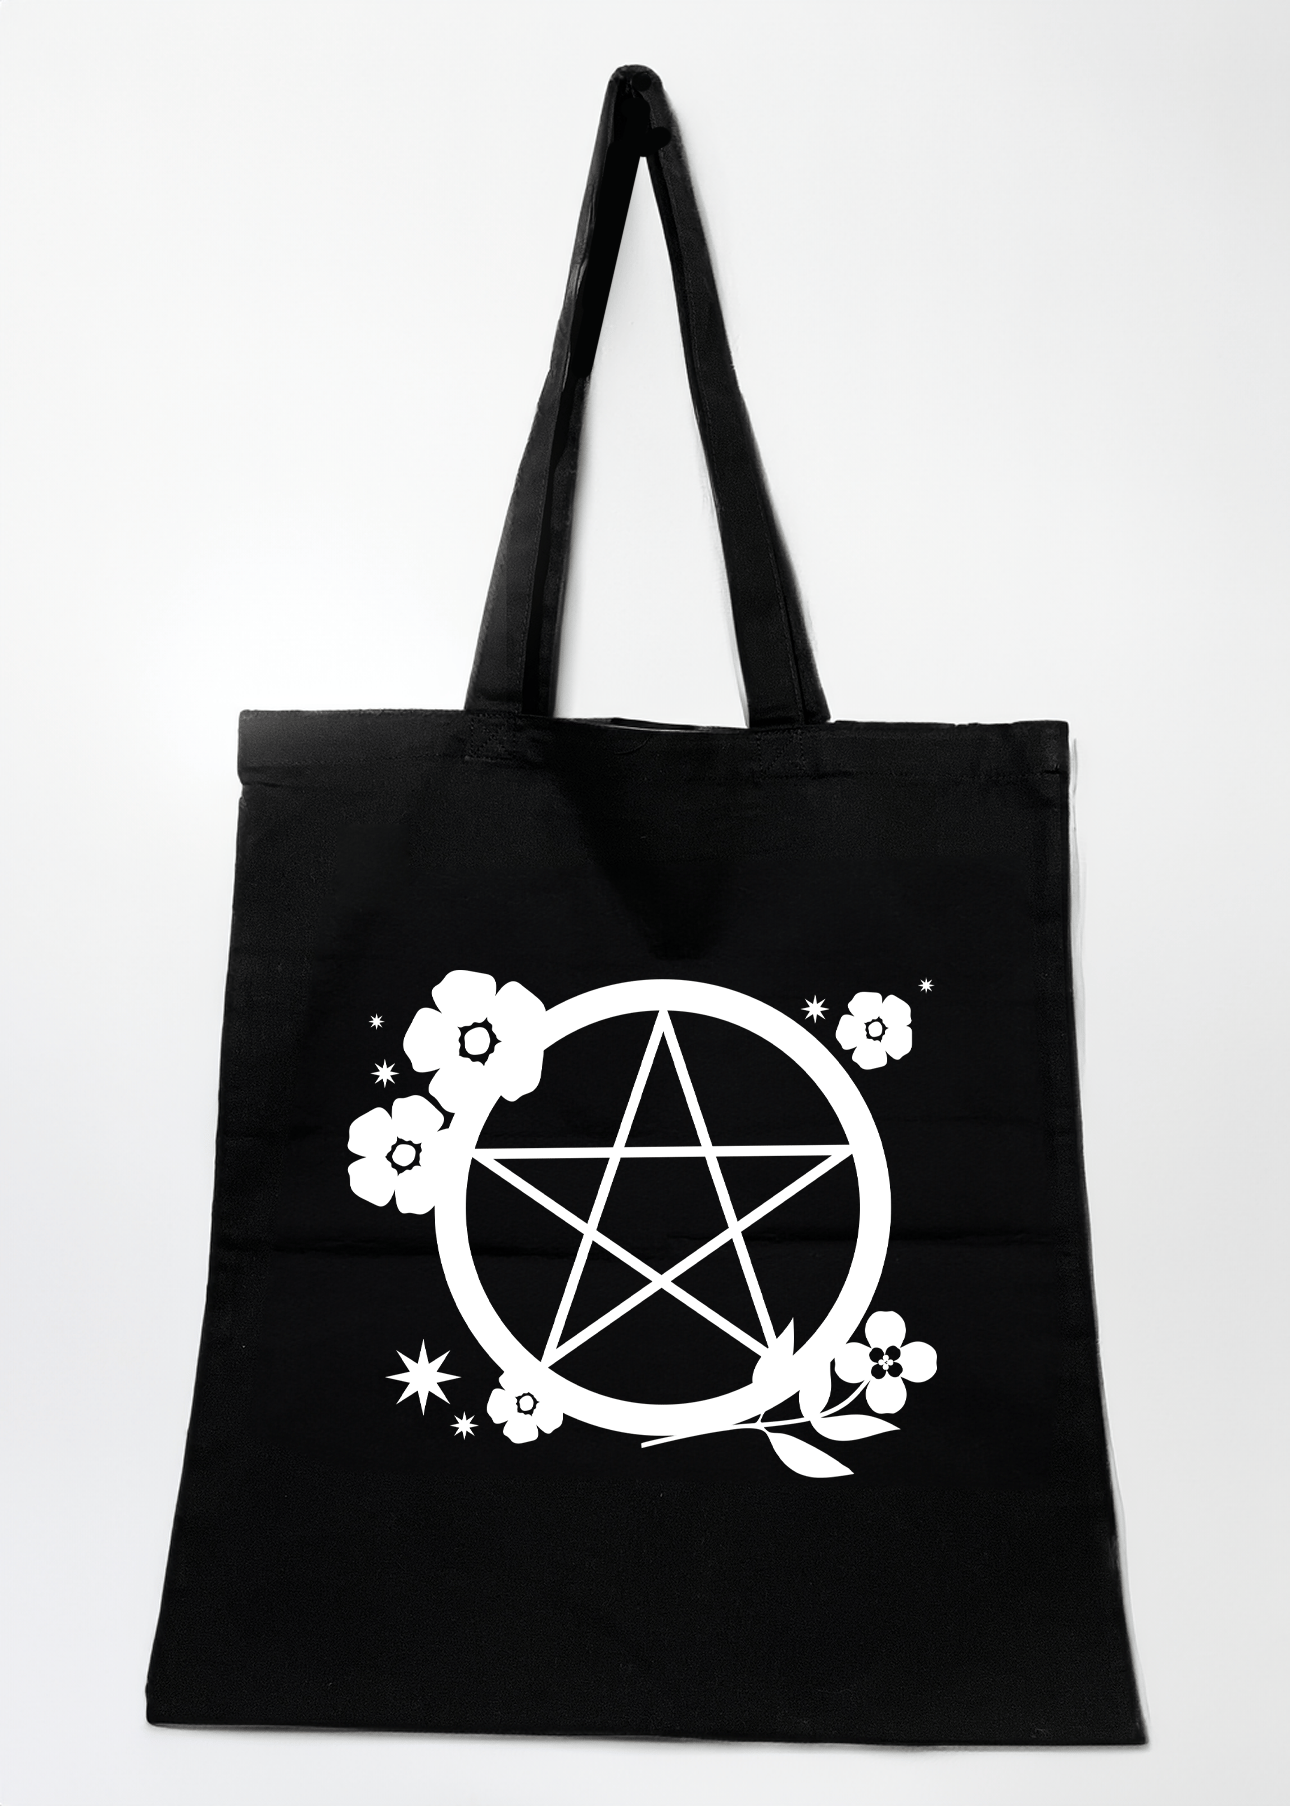 Pentacle & Flowers  - Tote Bag